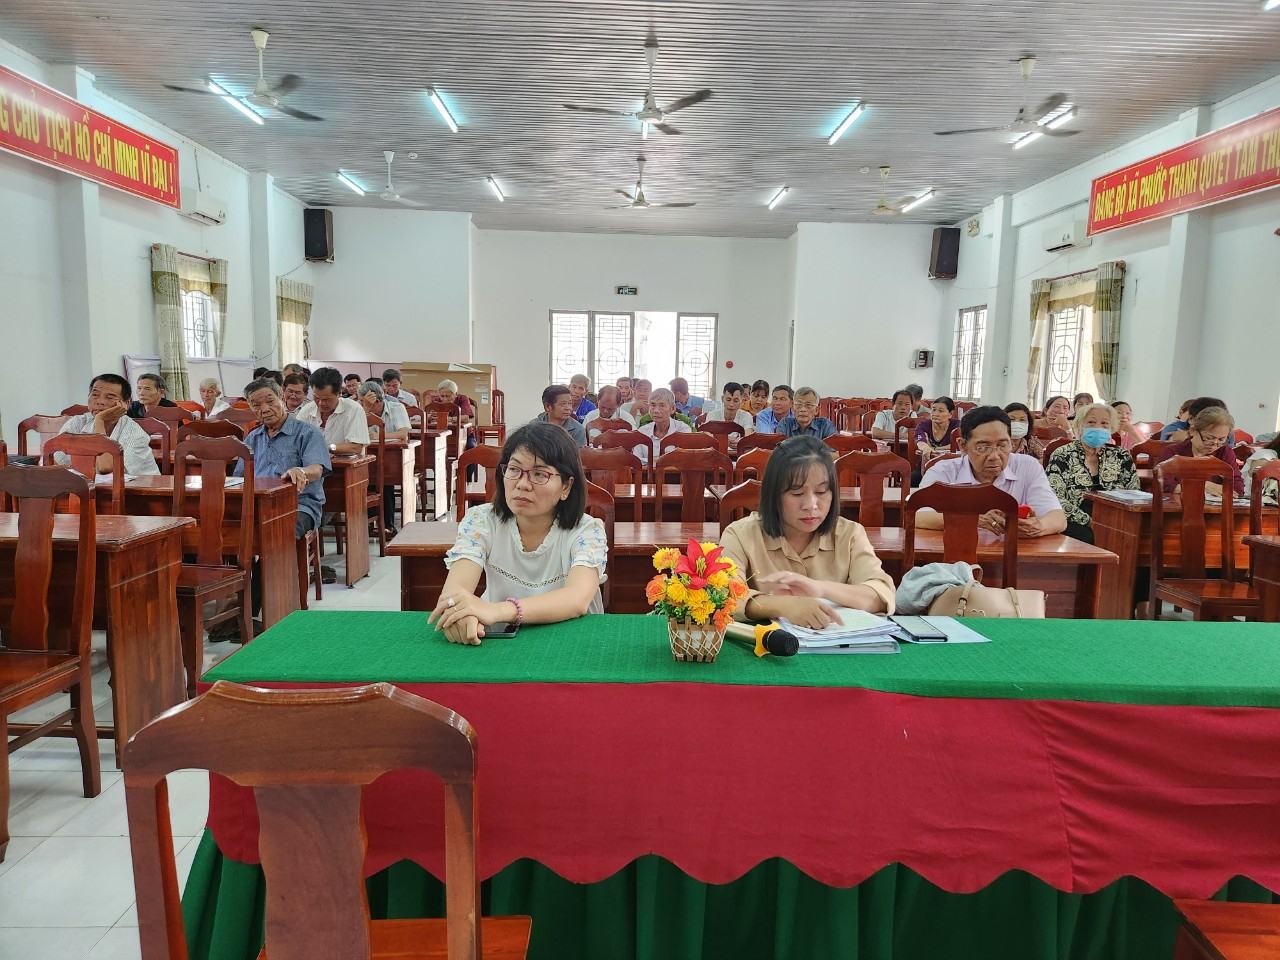 Ủy ban nhân dân xã Phước Thạnh phối hợp Trung tâm trợ giúp pháp lý tỉnh Tây Ninh tổ chức Hội nghị truyền thông trợ giúp pháp lý kết hợp tư vấn pháp luật năm 2023